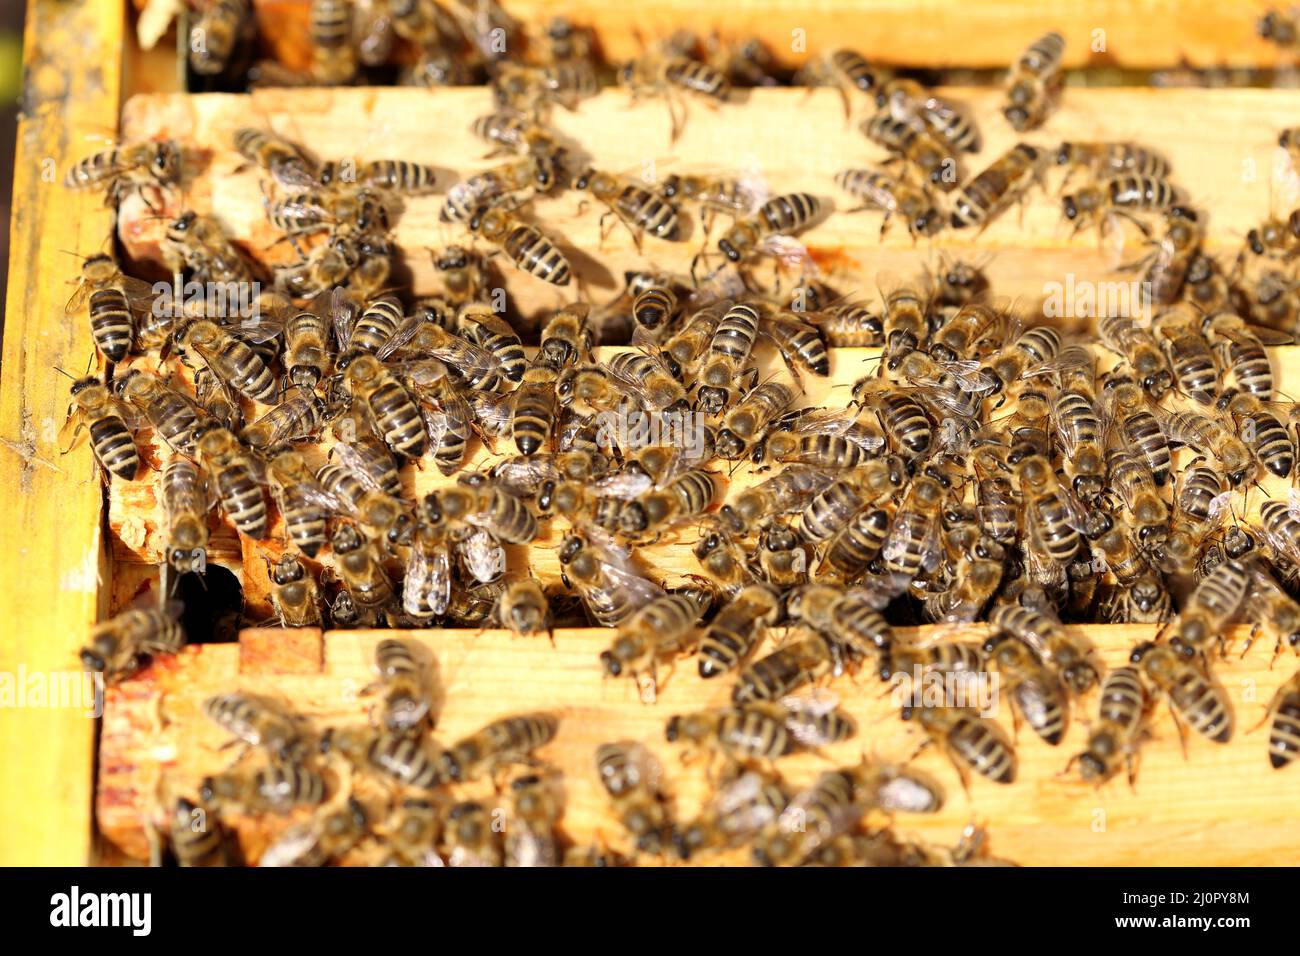 Beaucoup d'abeilles Banque D'Images